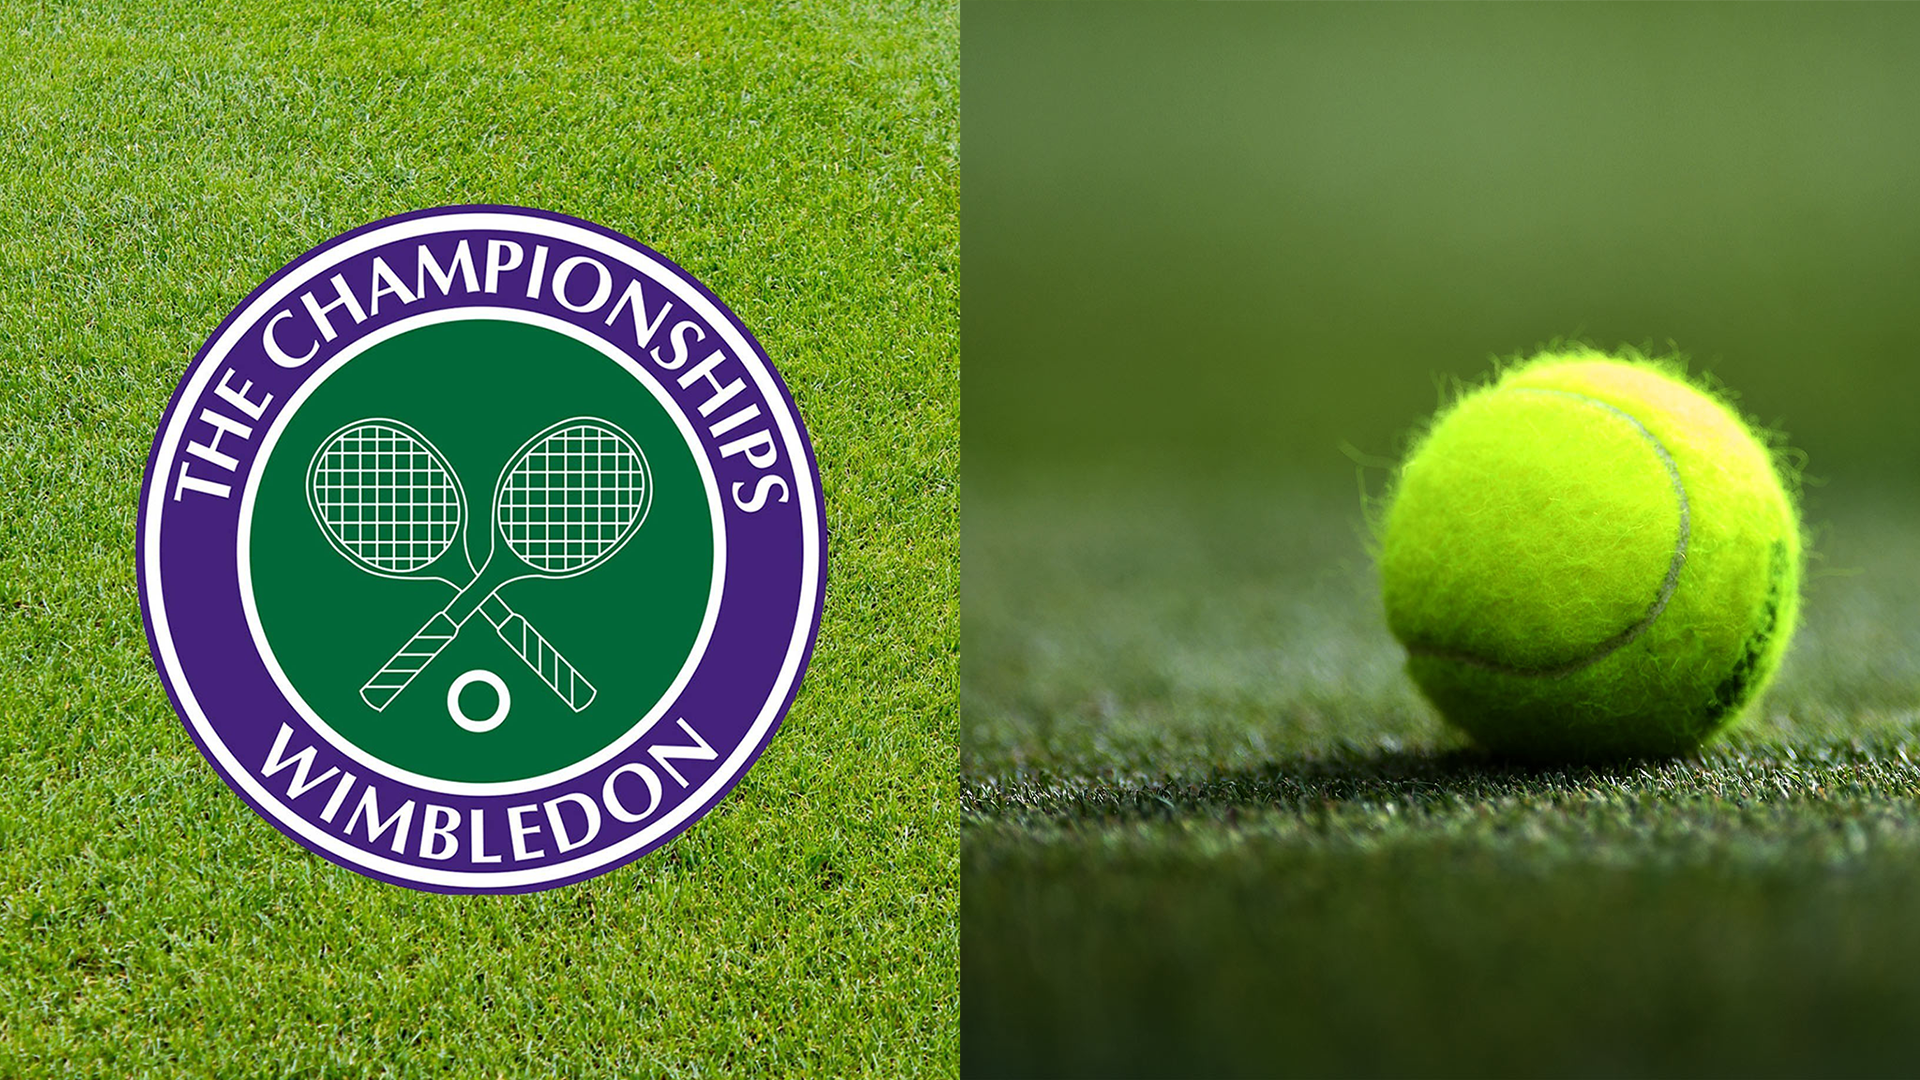 Wimbledon Logo